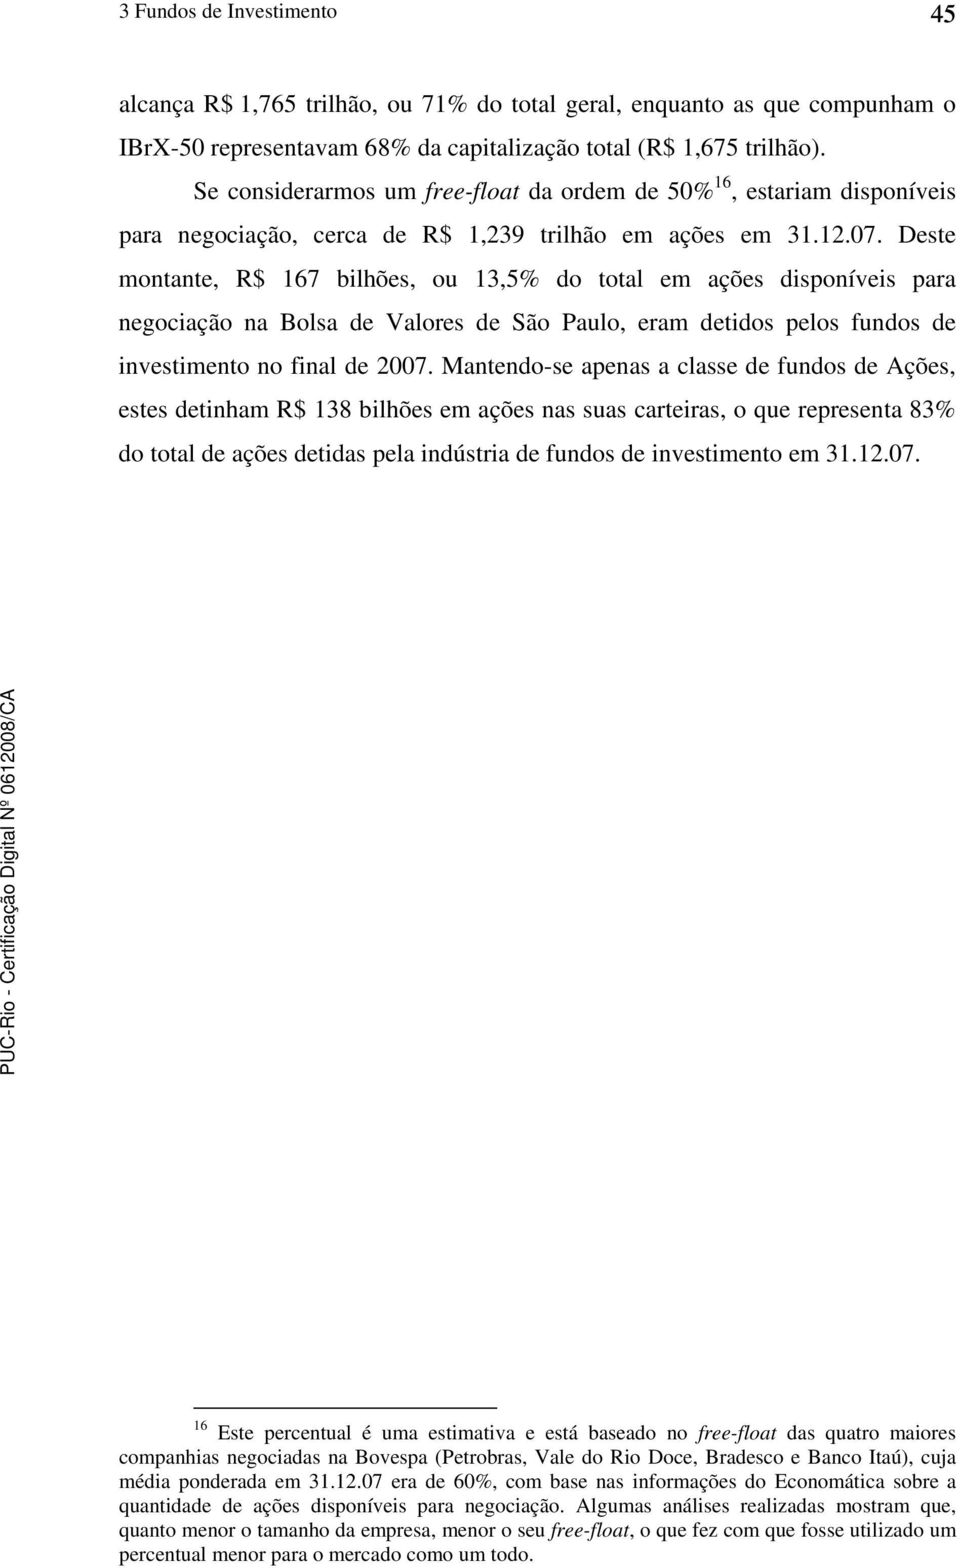 Deste montante, R$ 167 bilhões, ou 13,5% do total em ações disponíveis para negociação na Bolsa de Valores de São Paulo, eram detidos pelos fundos de investimento no final de 2007.